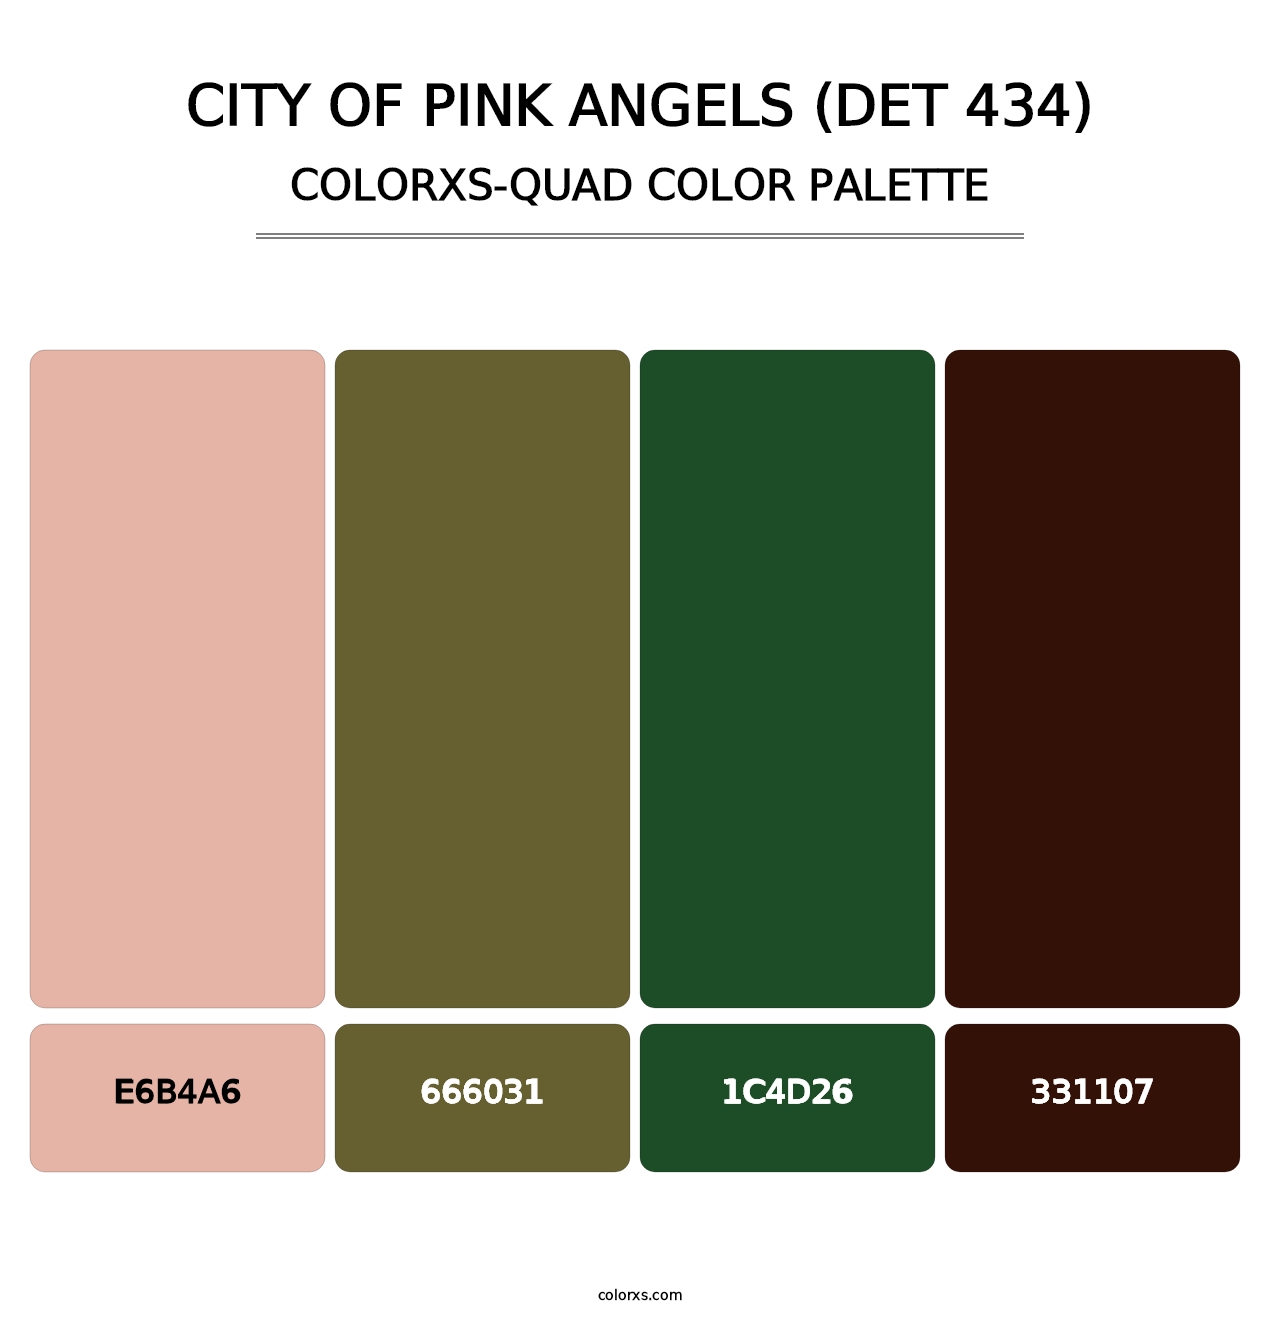 City of Pink Angels (DET 434) - Colorxs Quad Palette